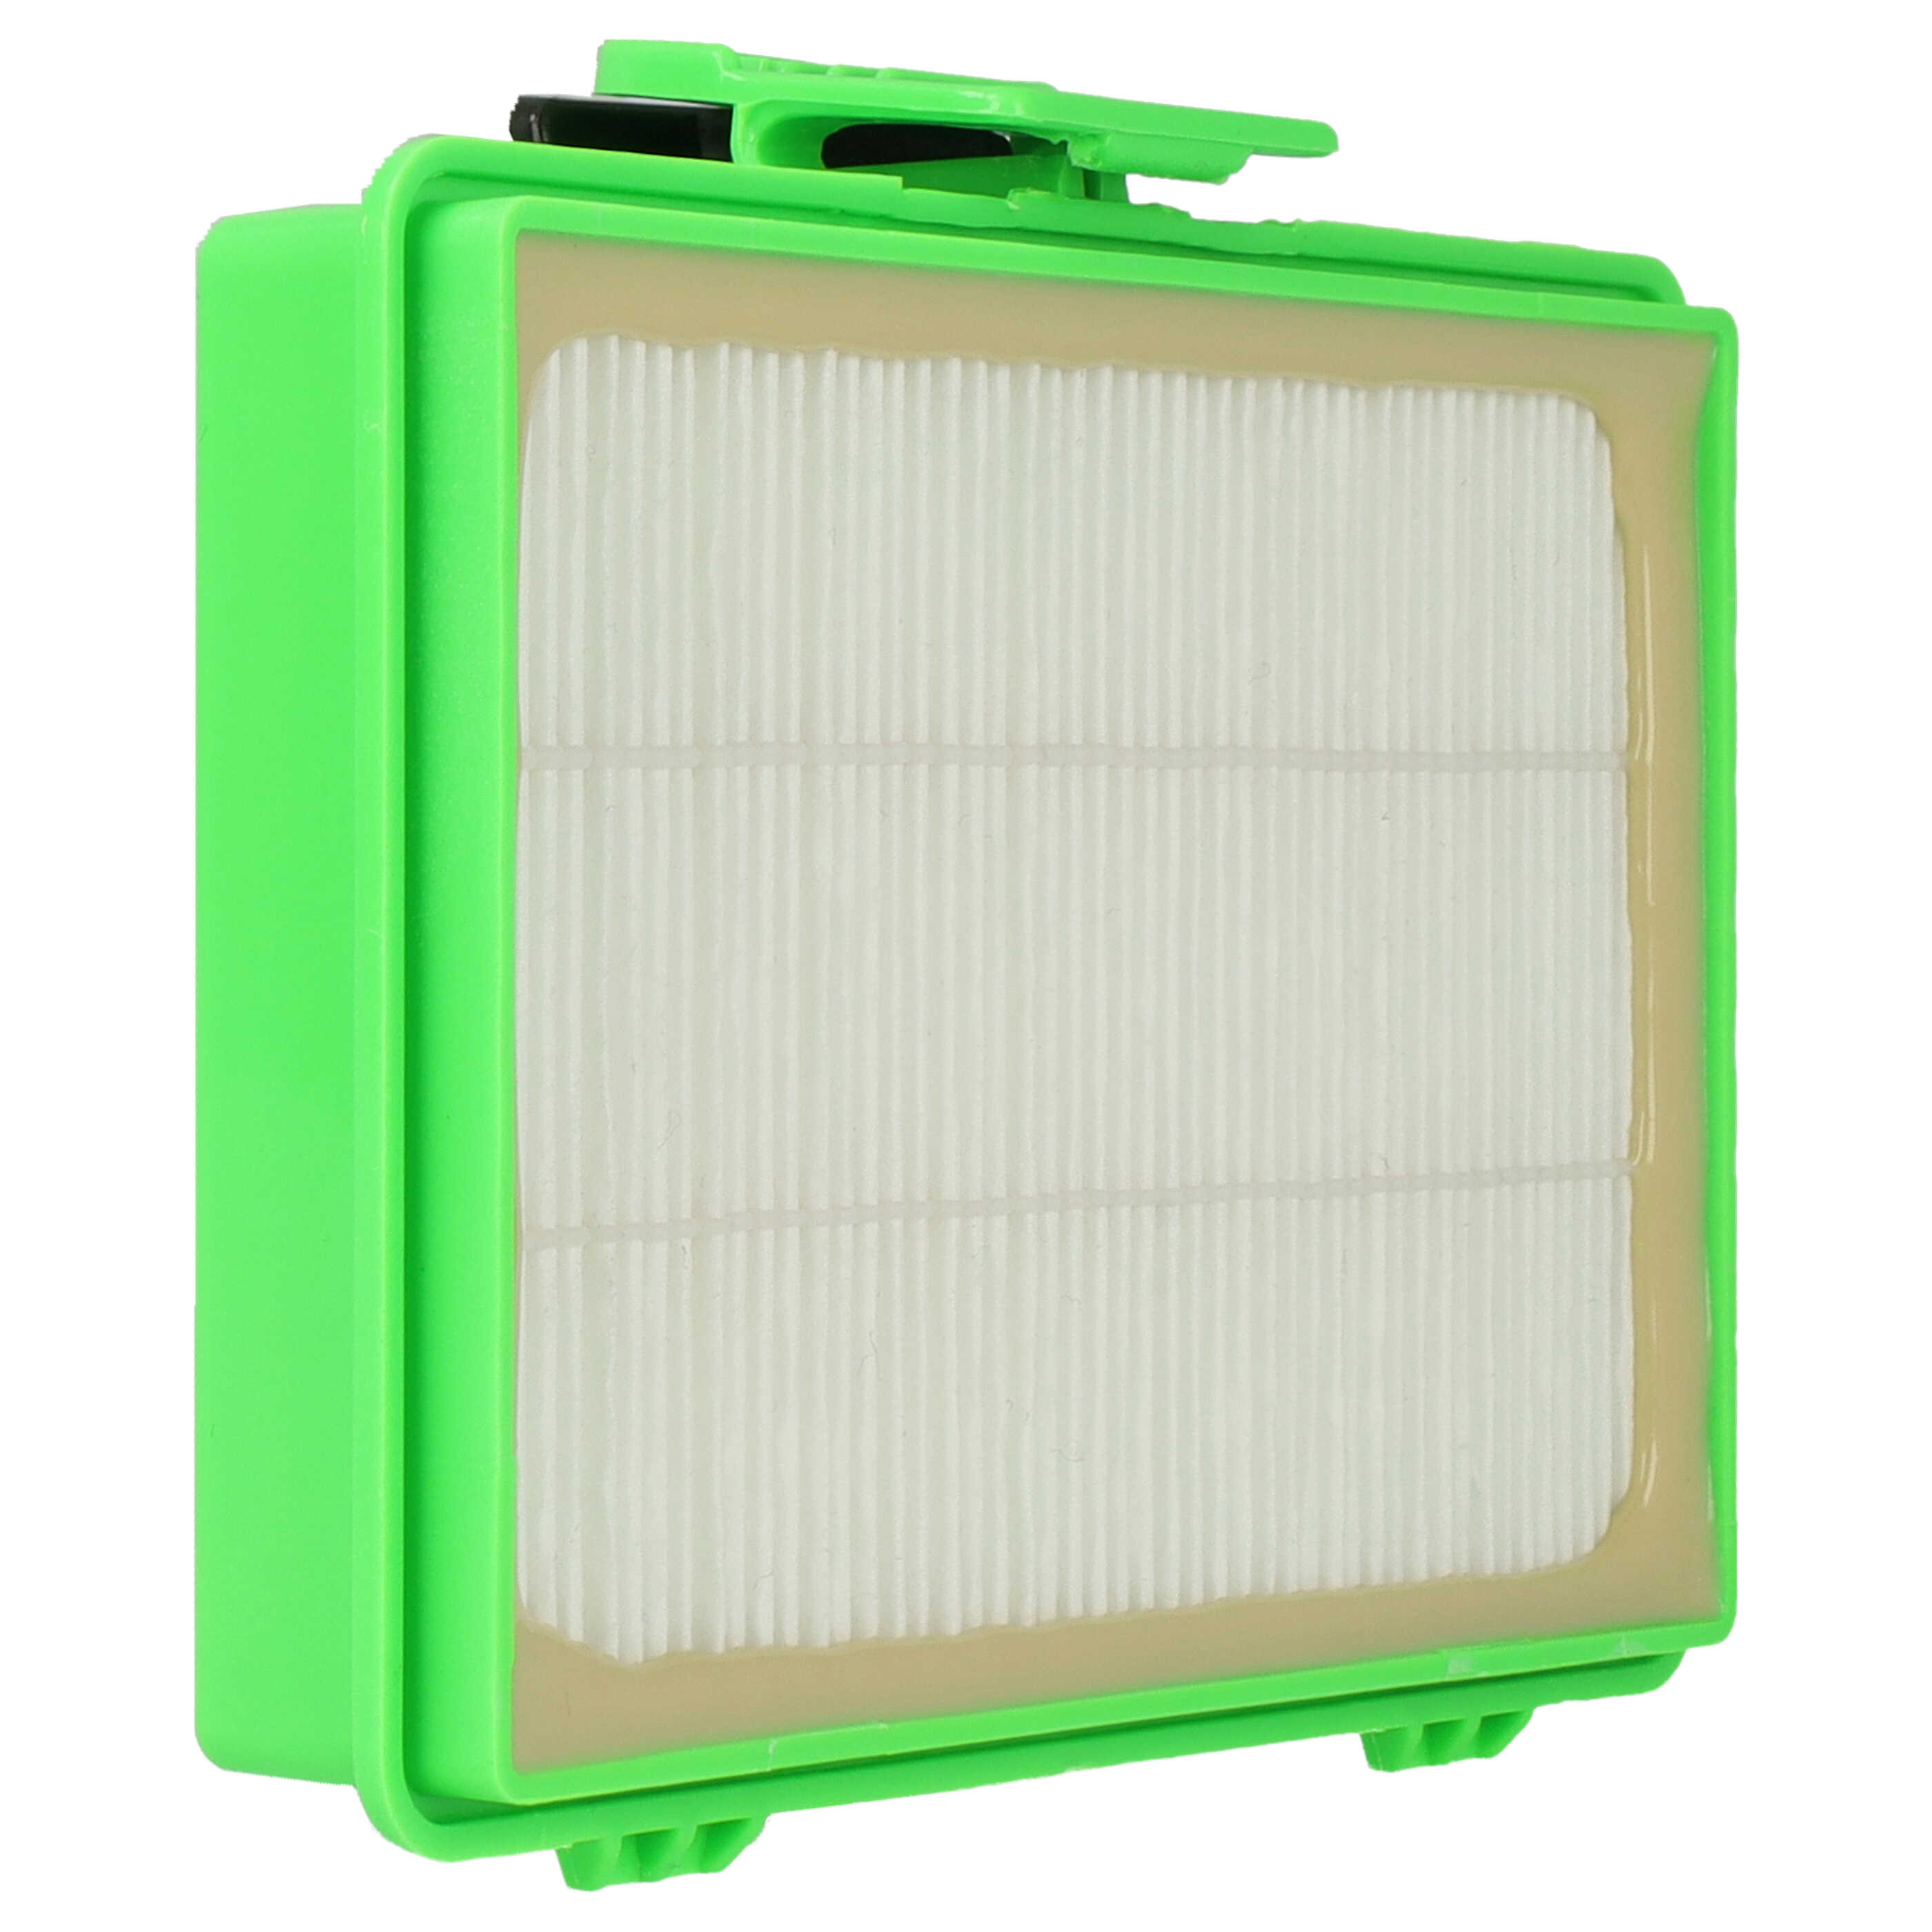 Filtro sostituisce Rowenta RS-RT9977 per aspirapolvere - filtro HEPA, bianco / verde